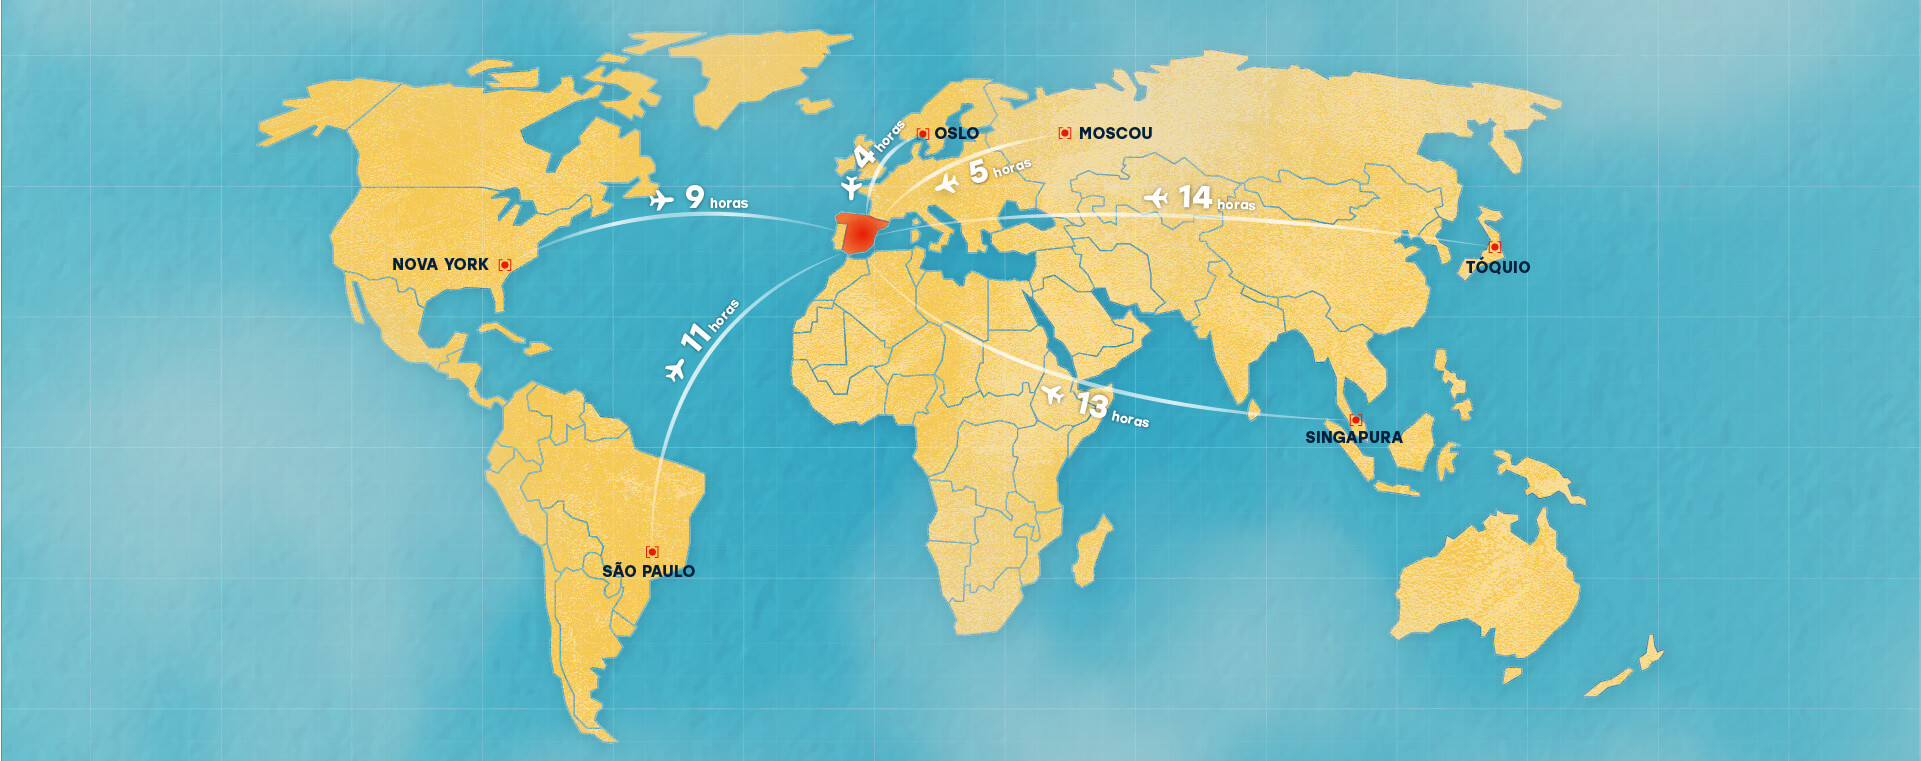 Mapa do mundo e suas distâncias de tempo viajando de avião